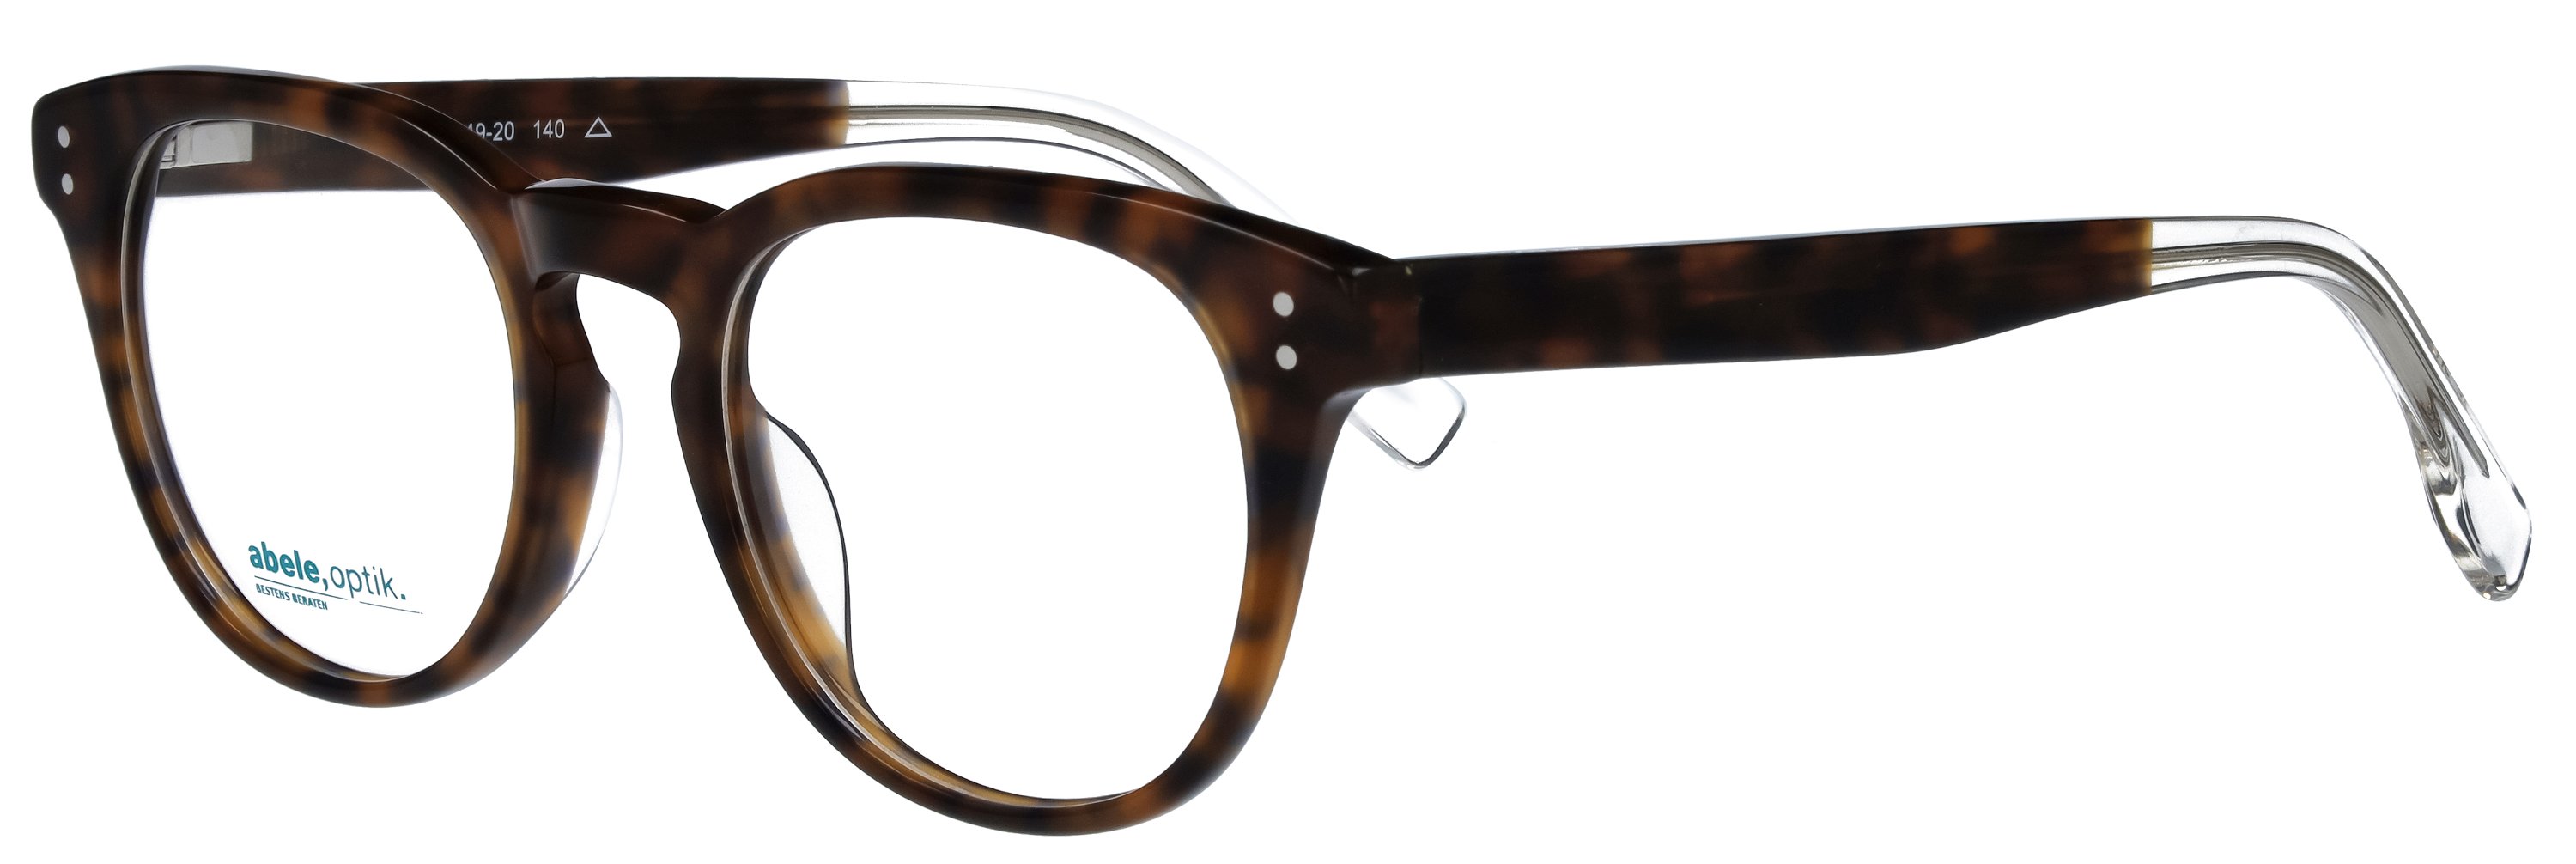 abele optik Brille für Damen in havanna 145731